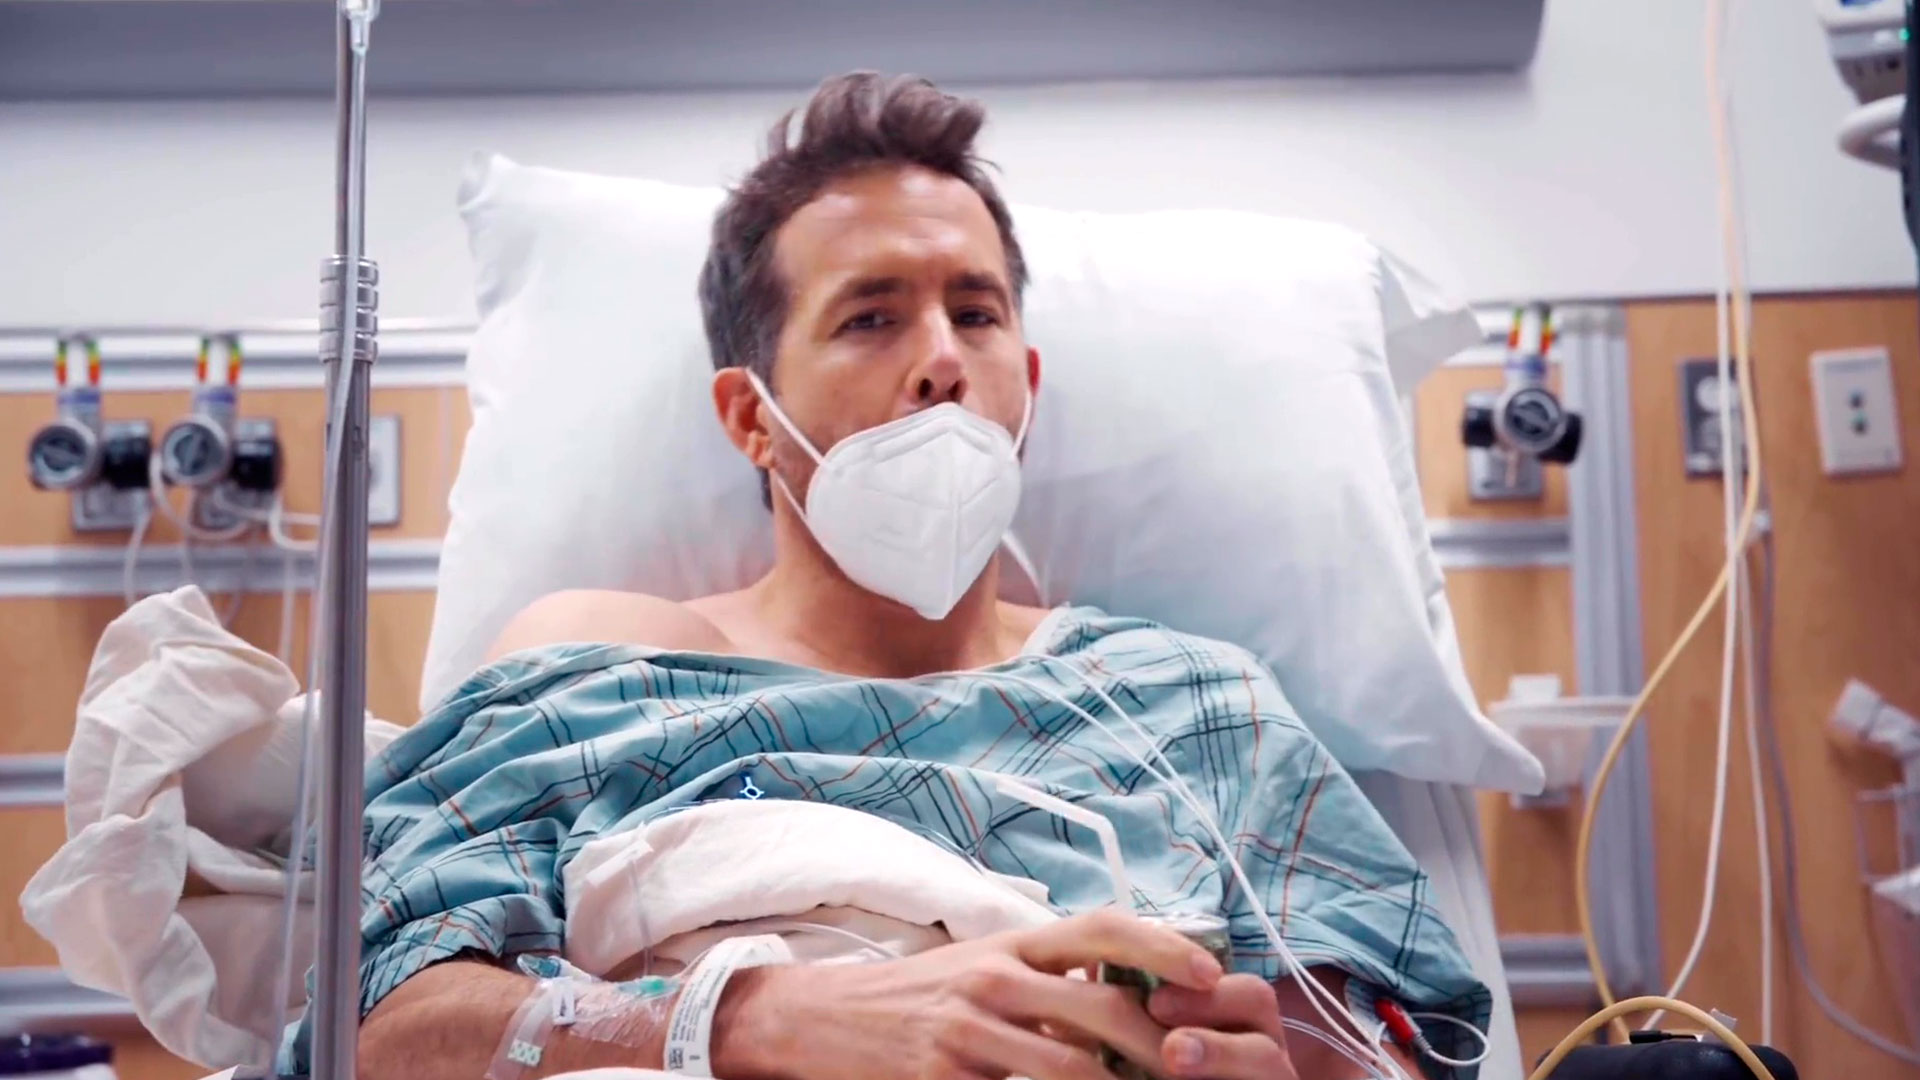 Ryan Reynolds filmó su propia colonoscopia y compartió el resultado para generar conciencia: “Me ha salvado la vida”